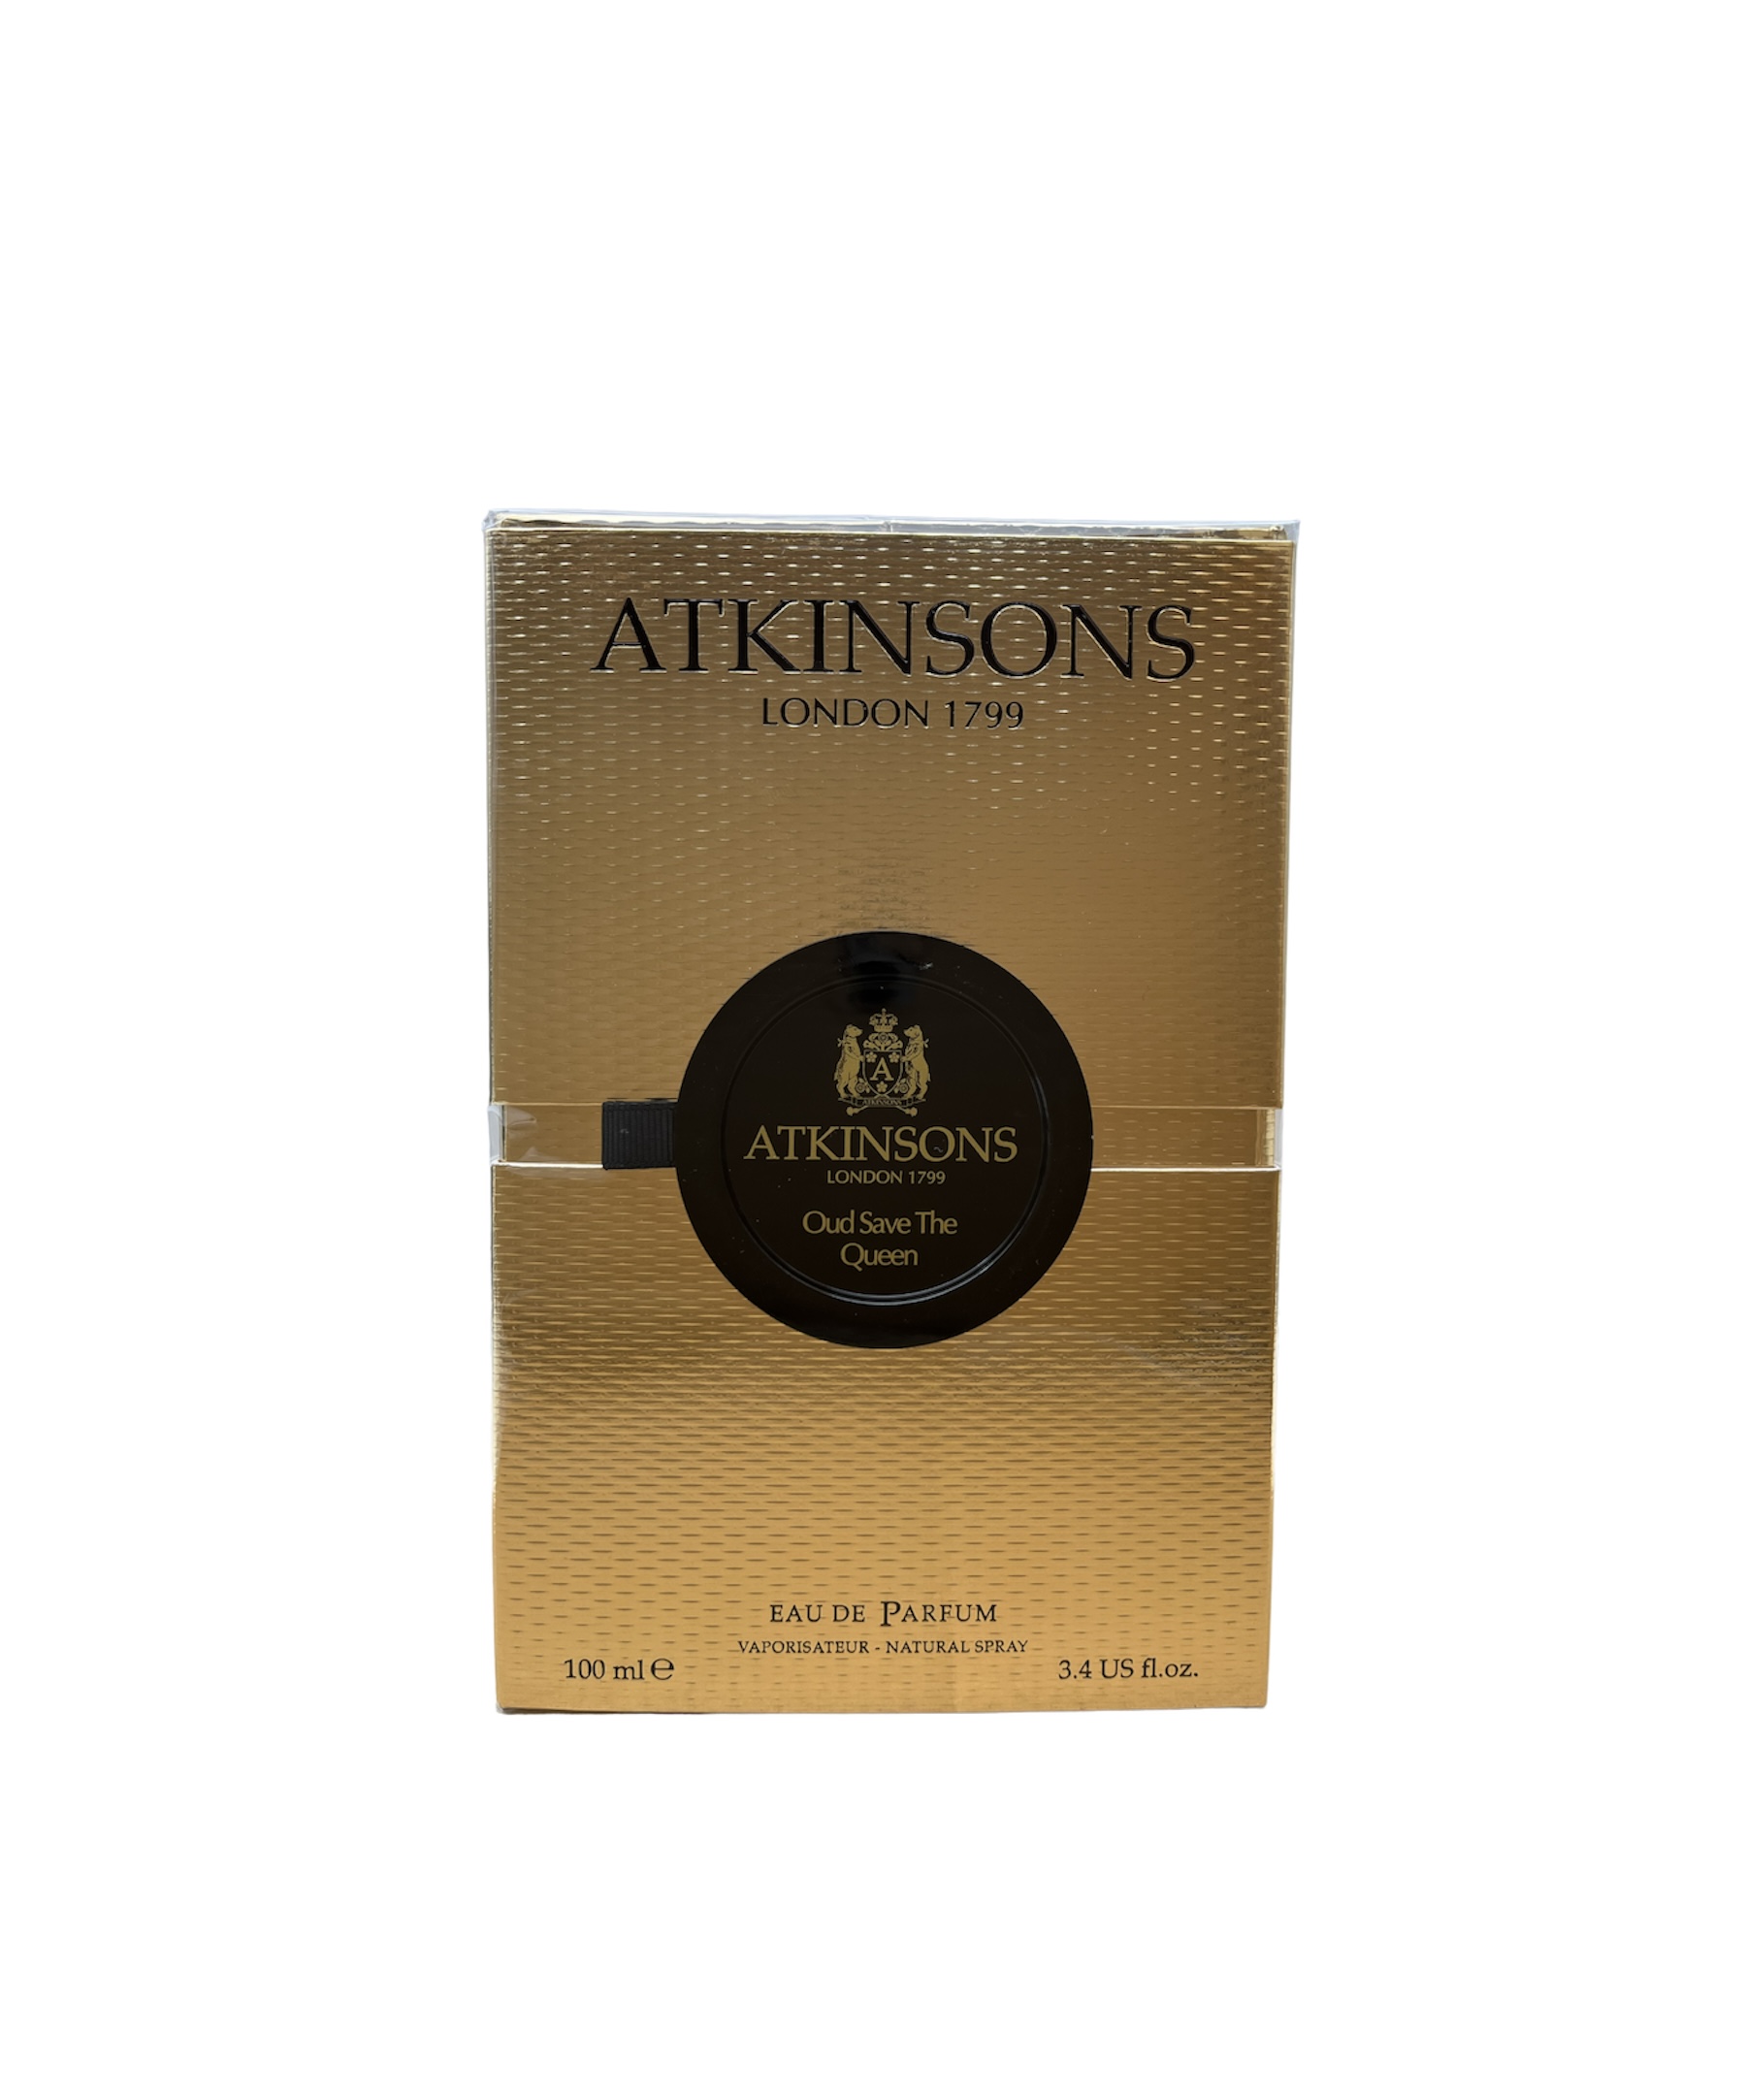 Atkinsons Oud Save The Queen Eau de Parfum 100ml